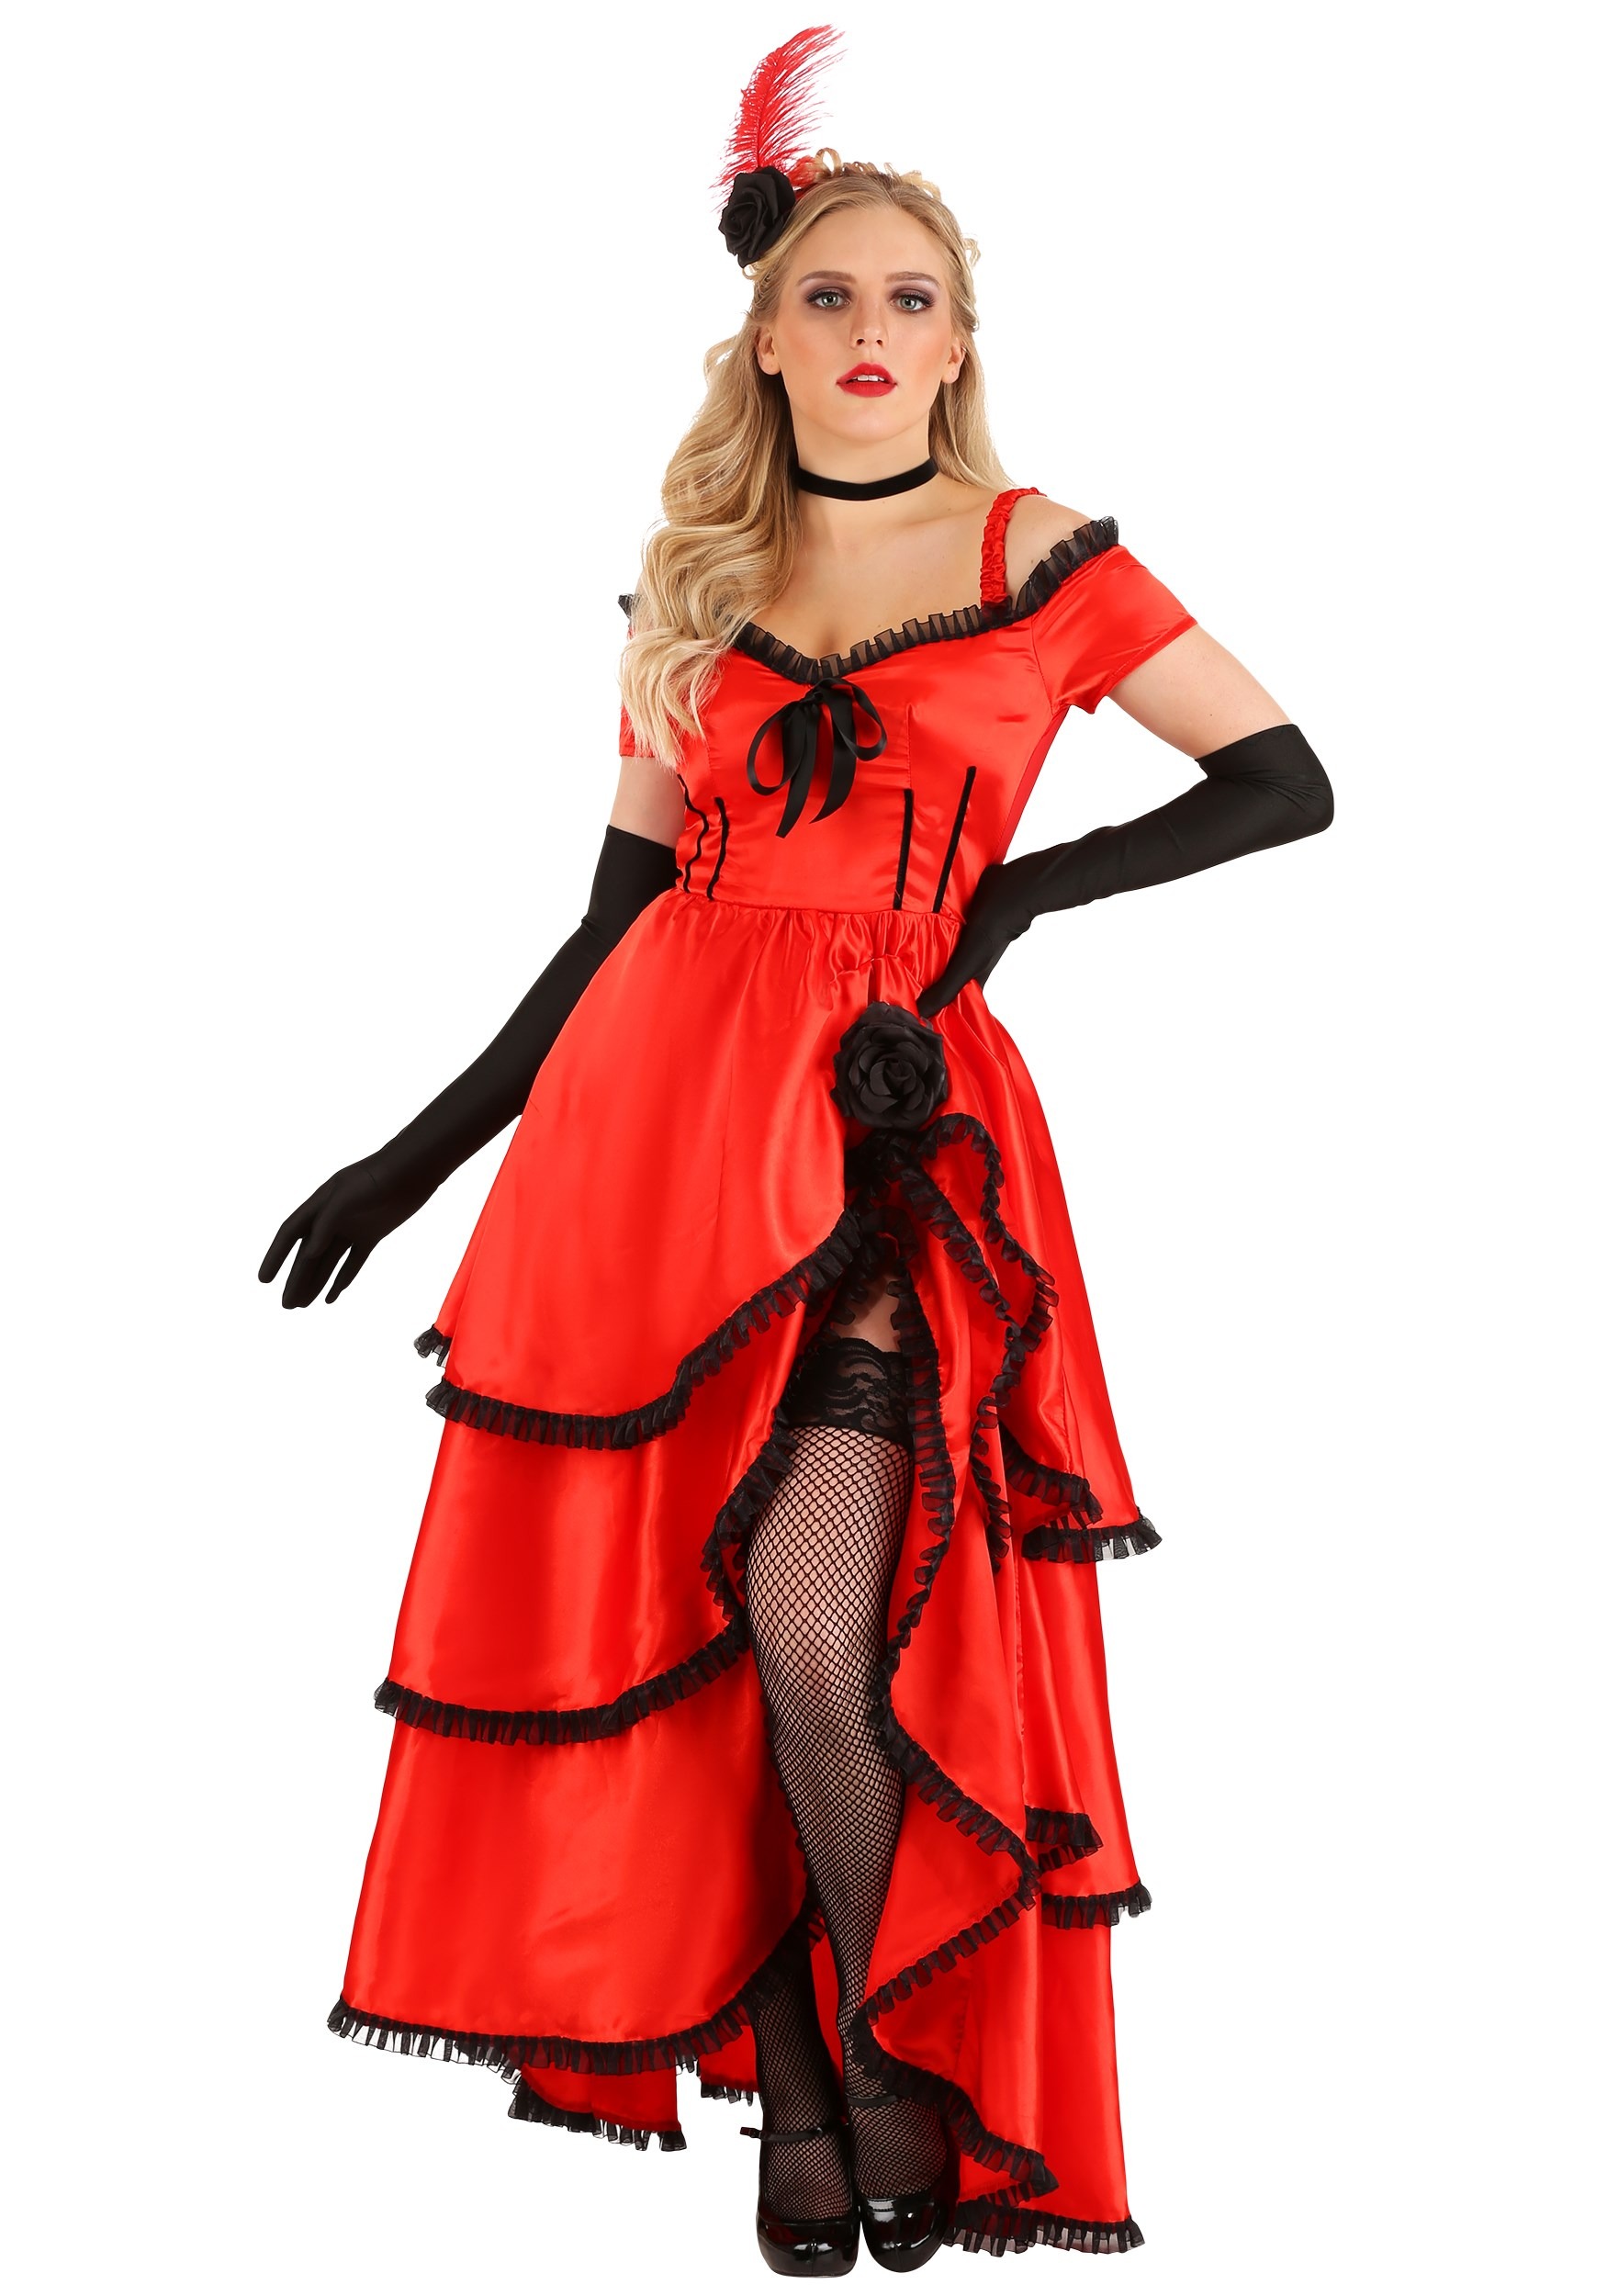 Women's Sassy Showgirl Costume Dress